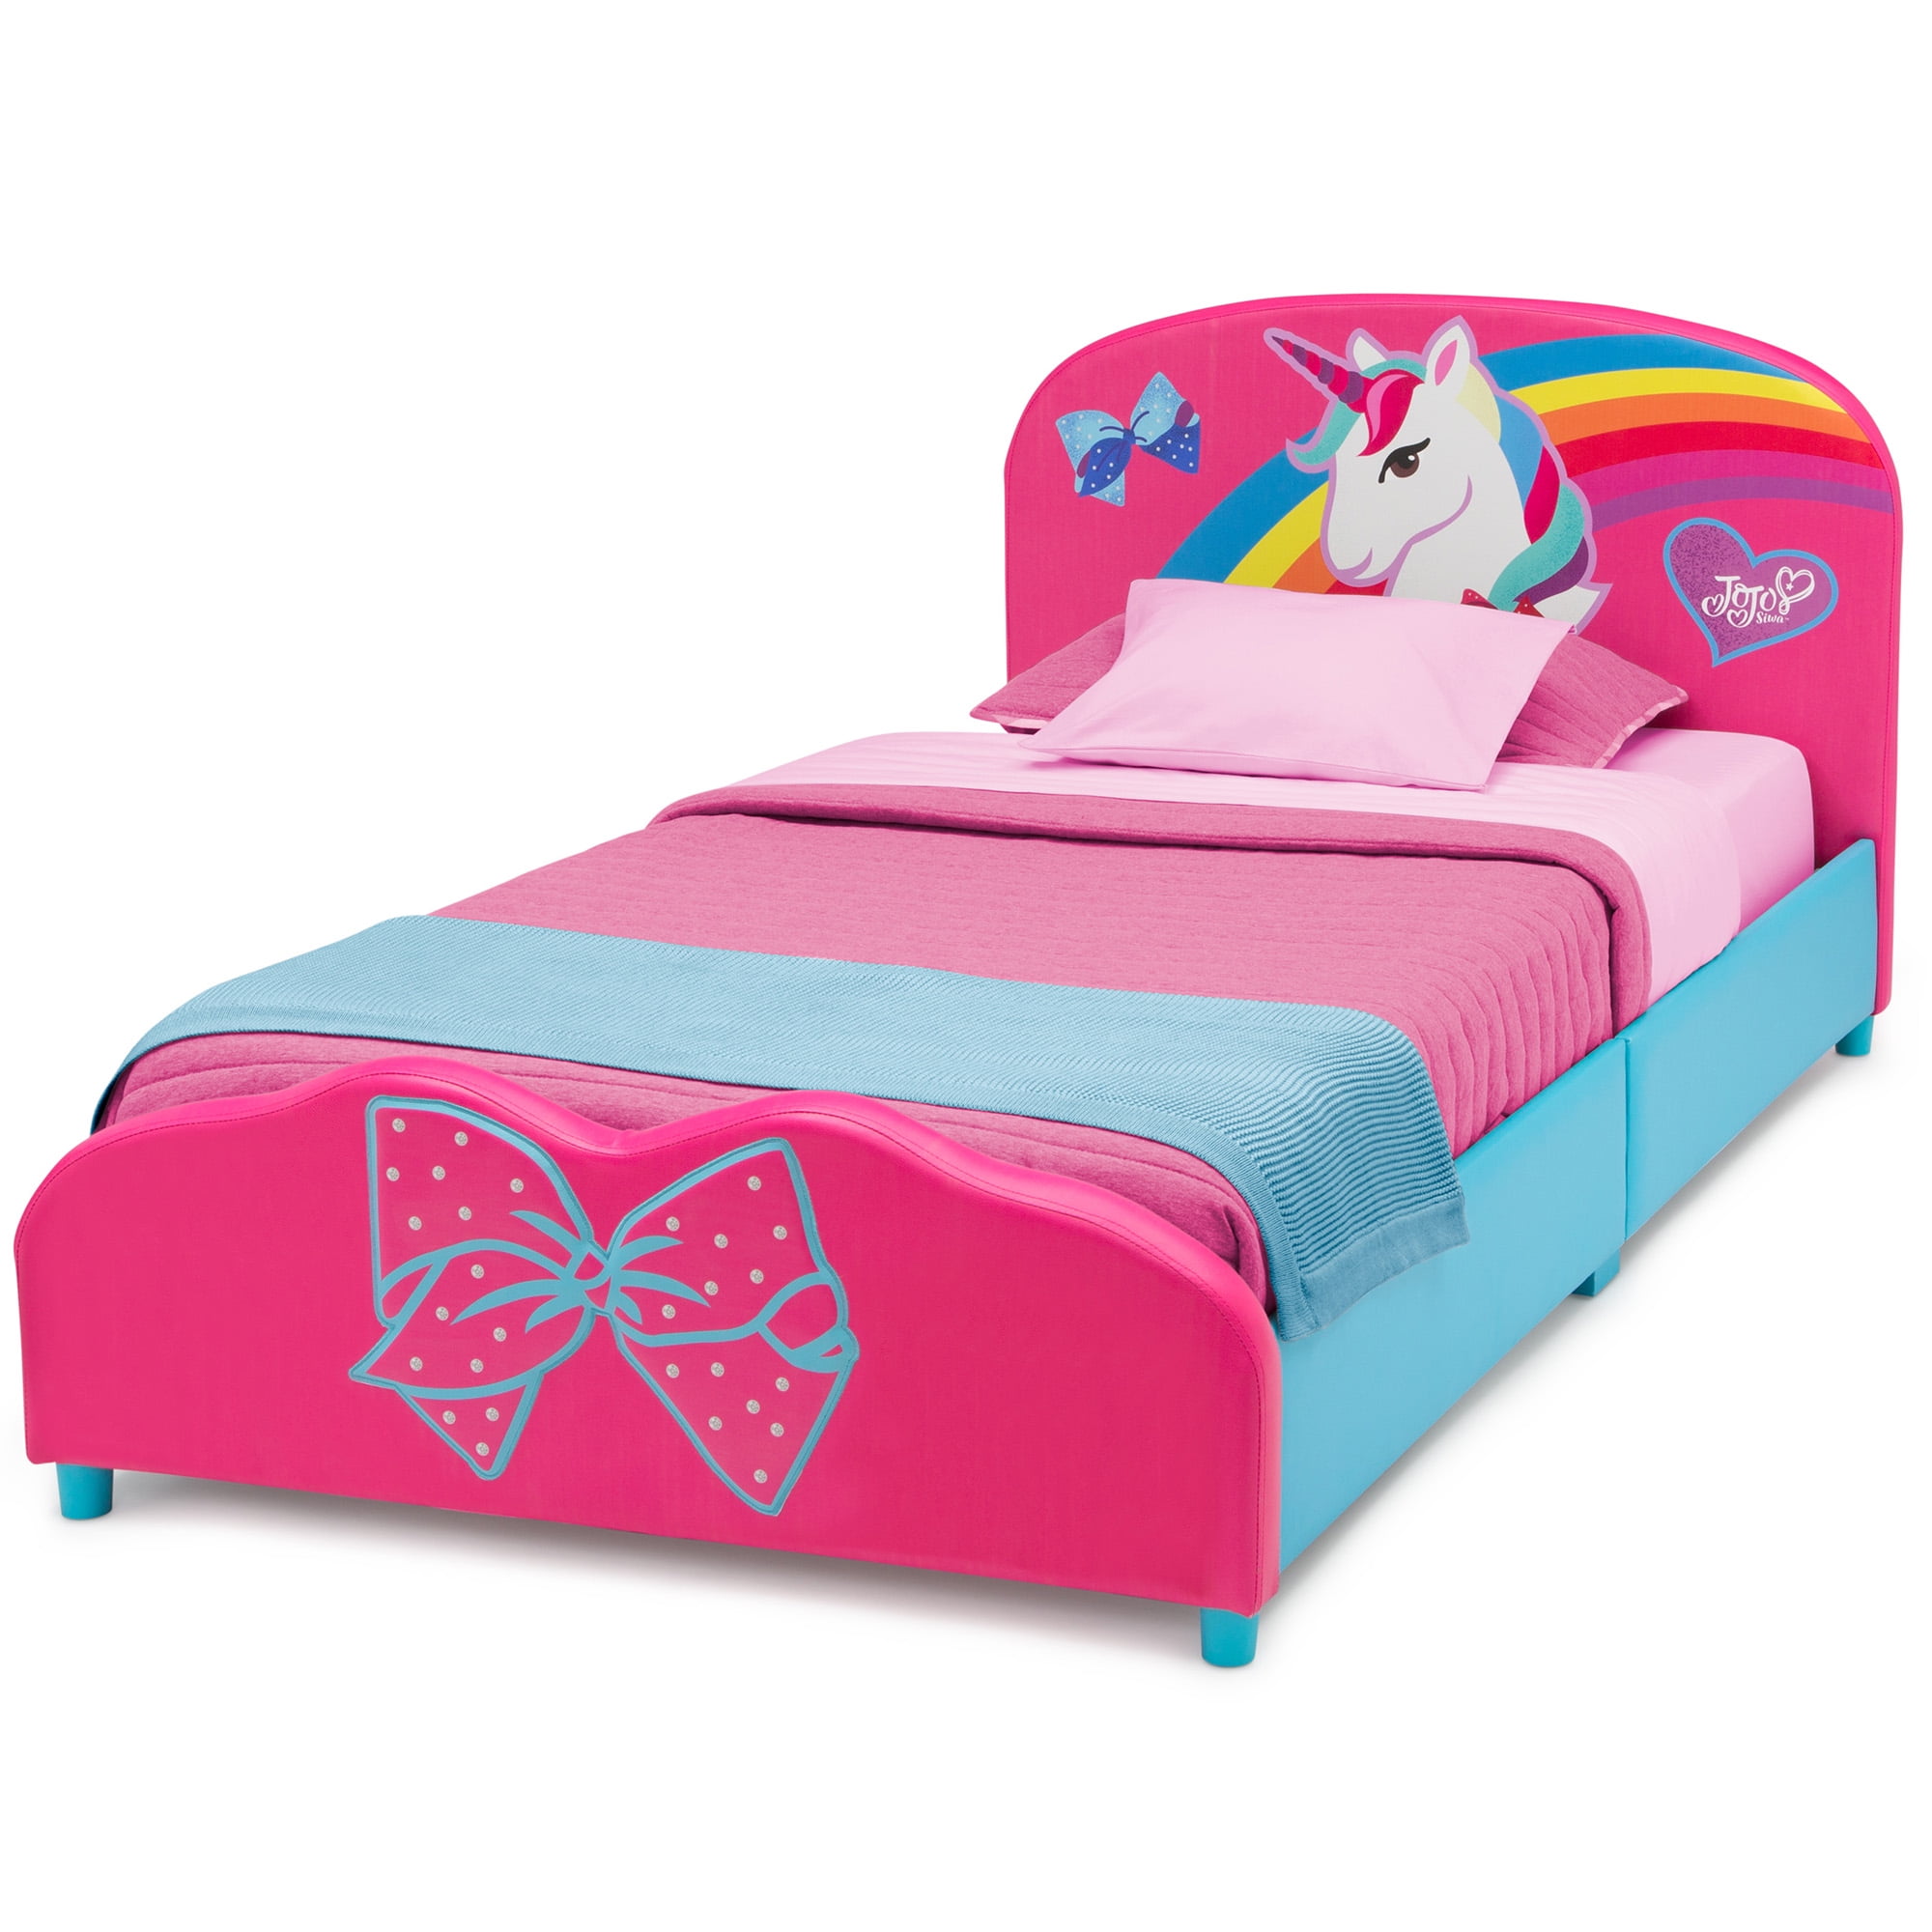 Кровать единорог. Кровать Единорог для девочки. Кровать с единорогом детская. Розовая кровать. Кровать детская розовая с единорогом.